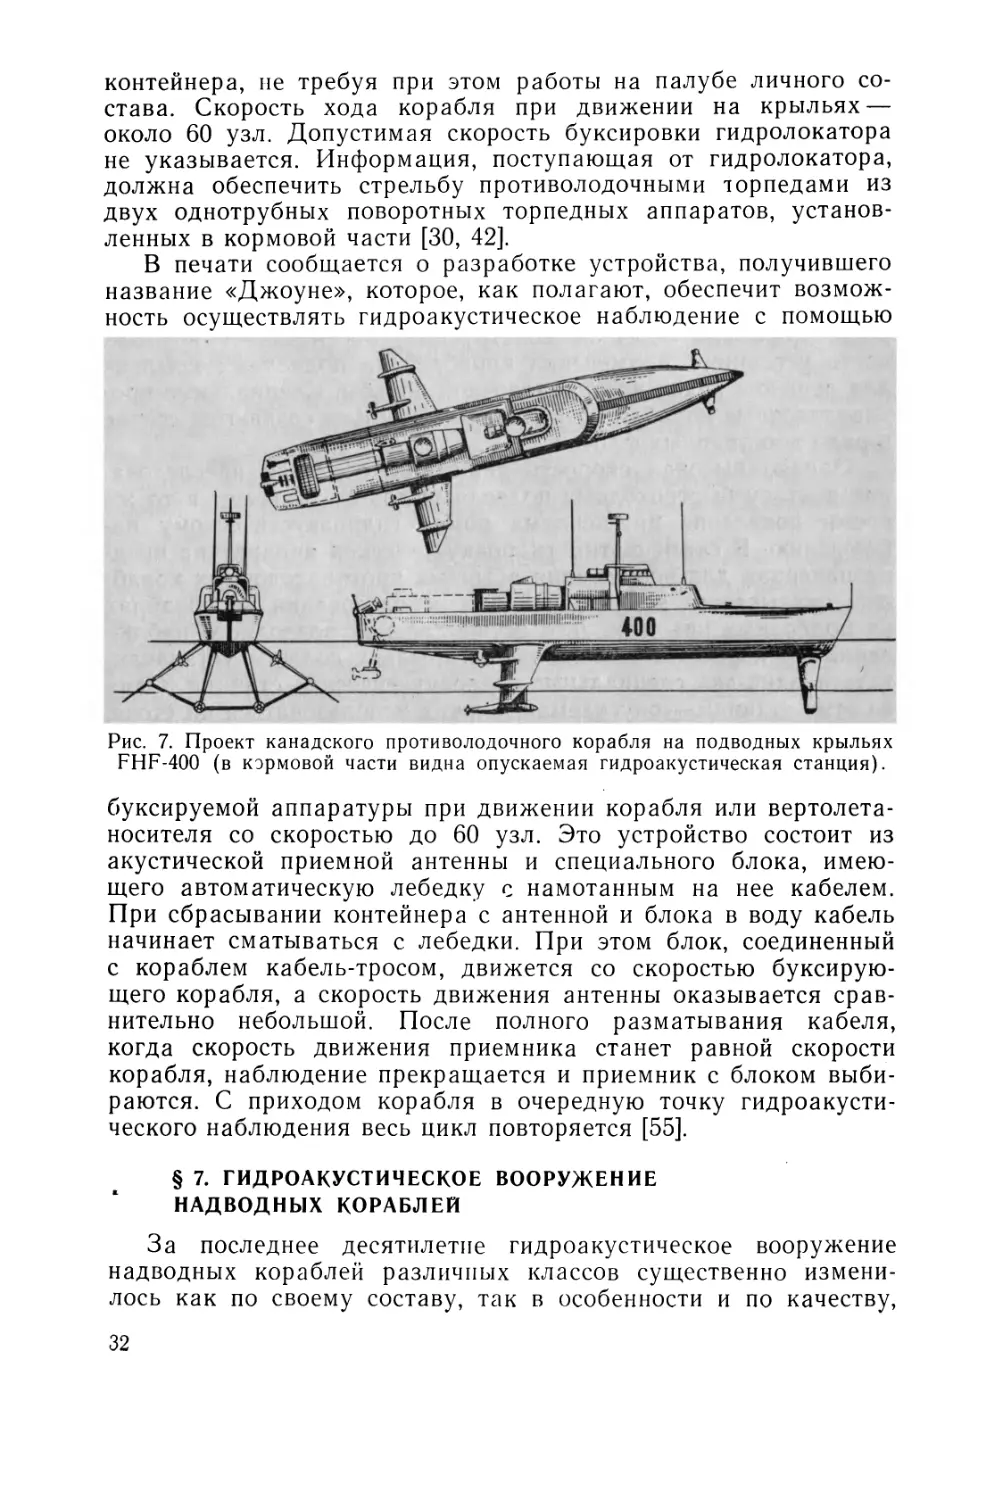 § 7. Гидроакустическое вооружение надводных кораблей